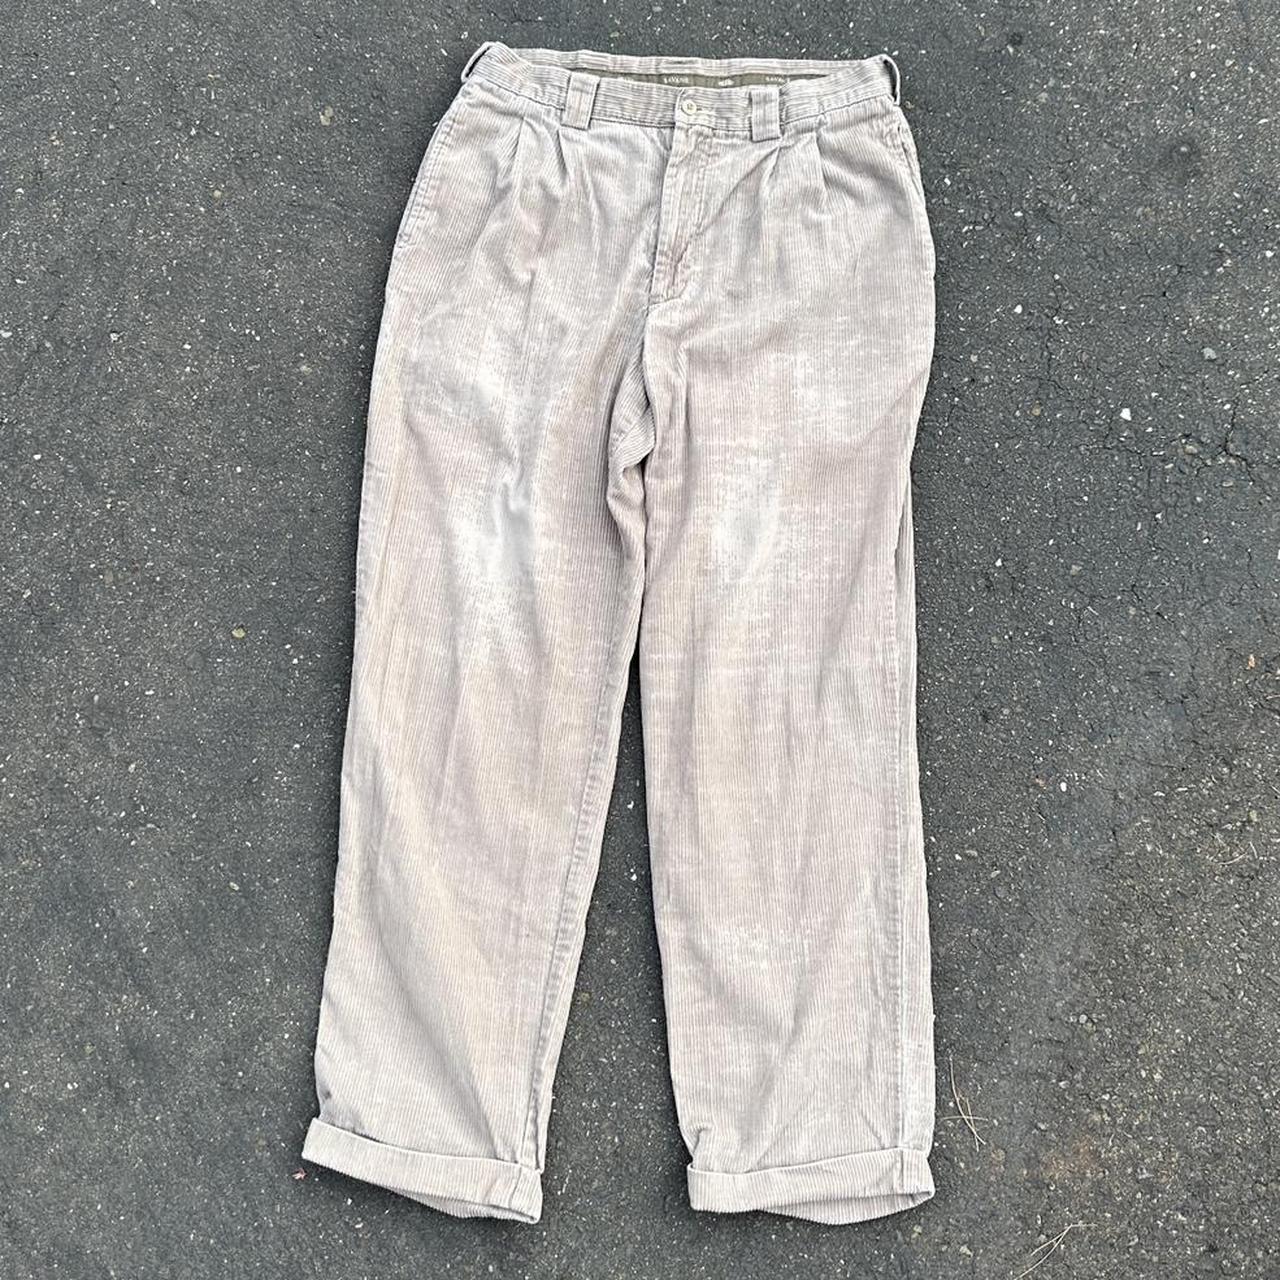 Corduroy Tan Pants Savane Size: 34/32 Wear on... - Depop